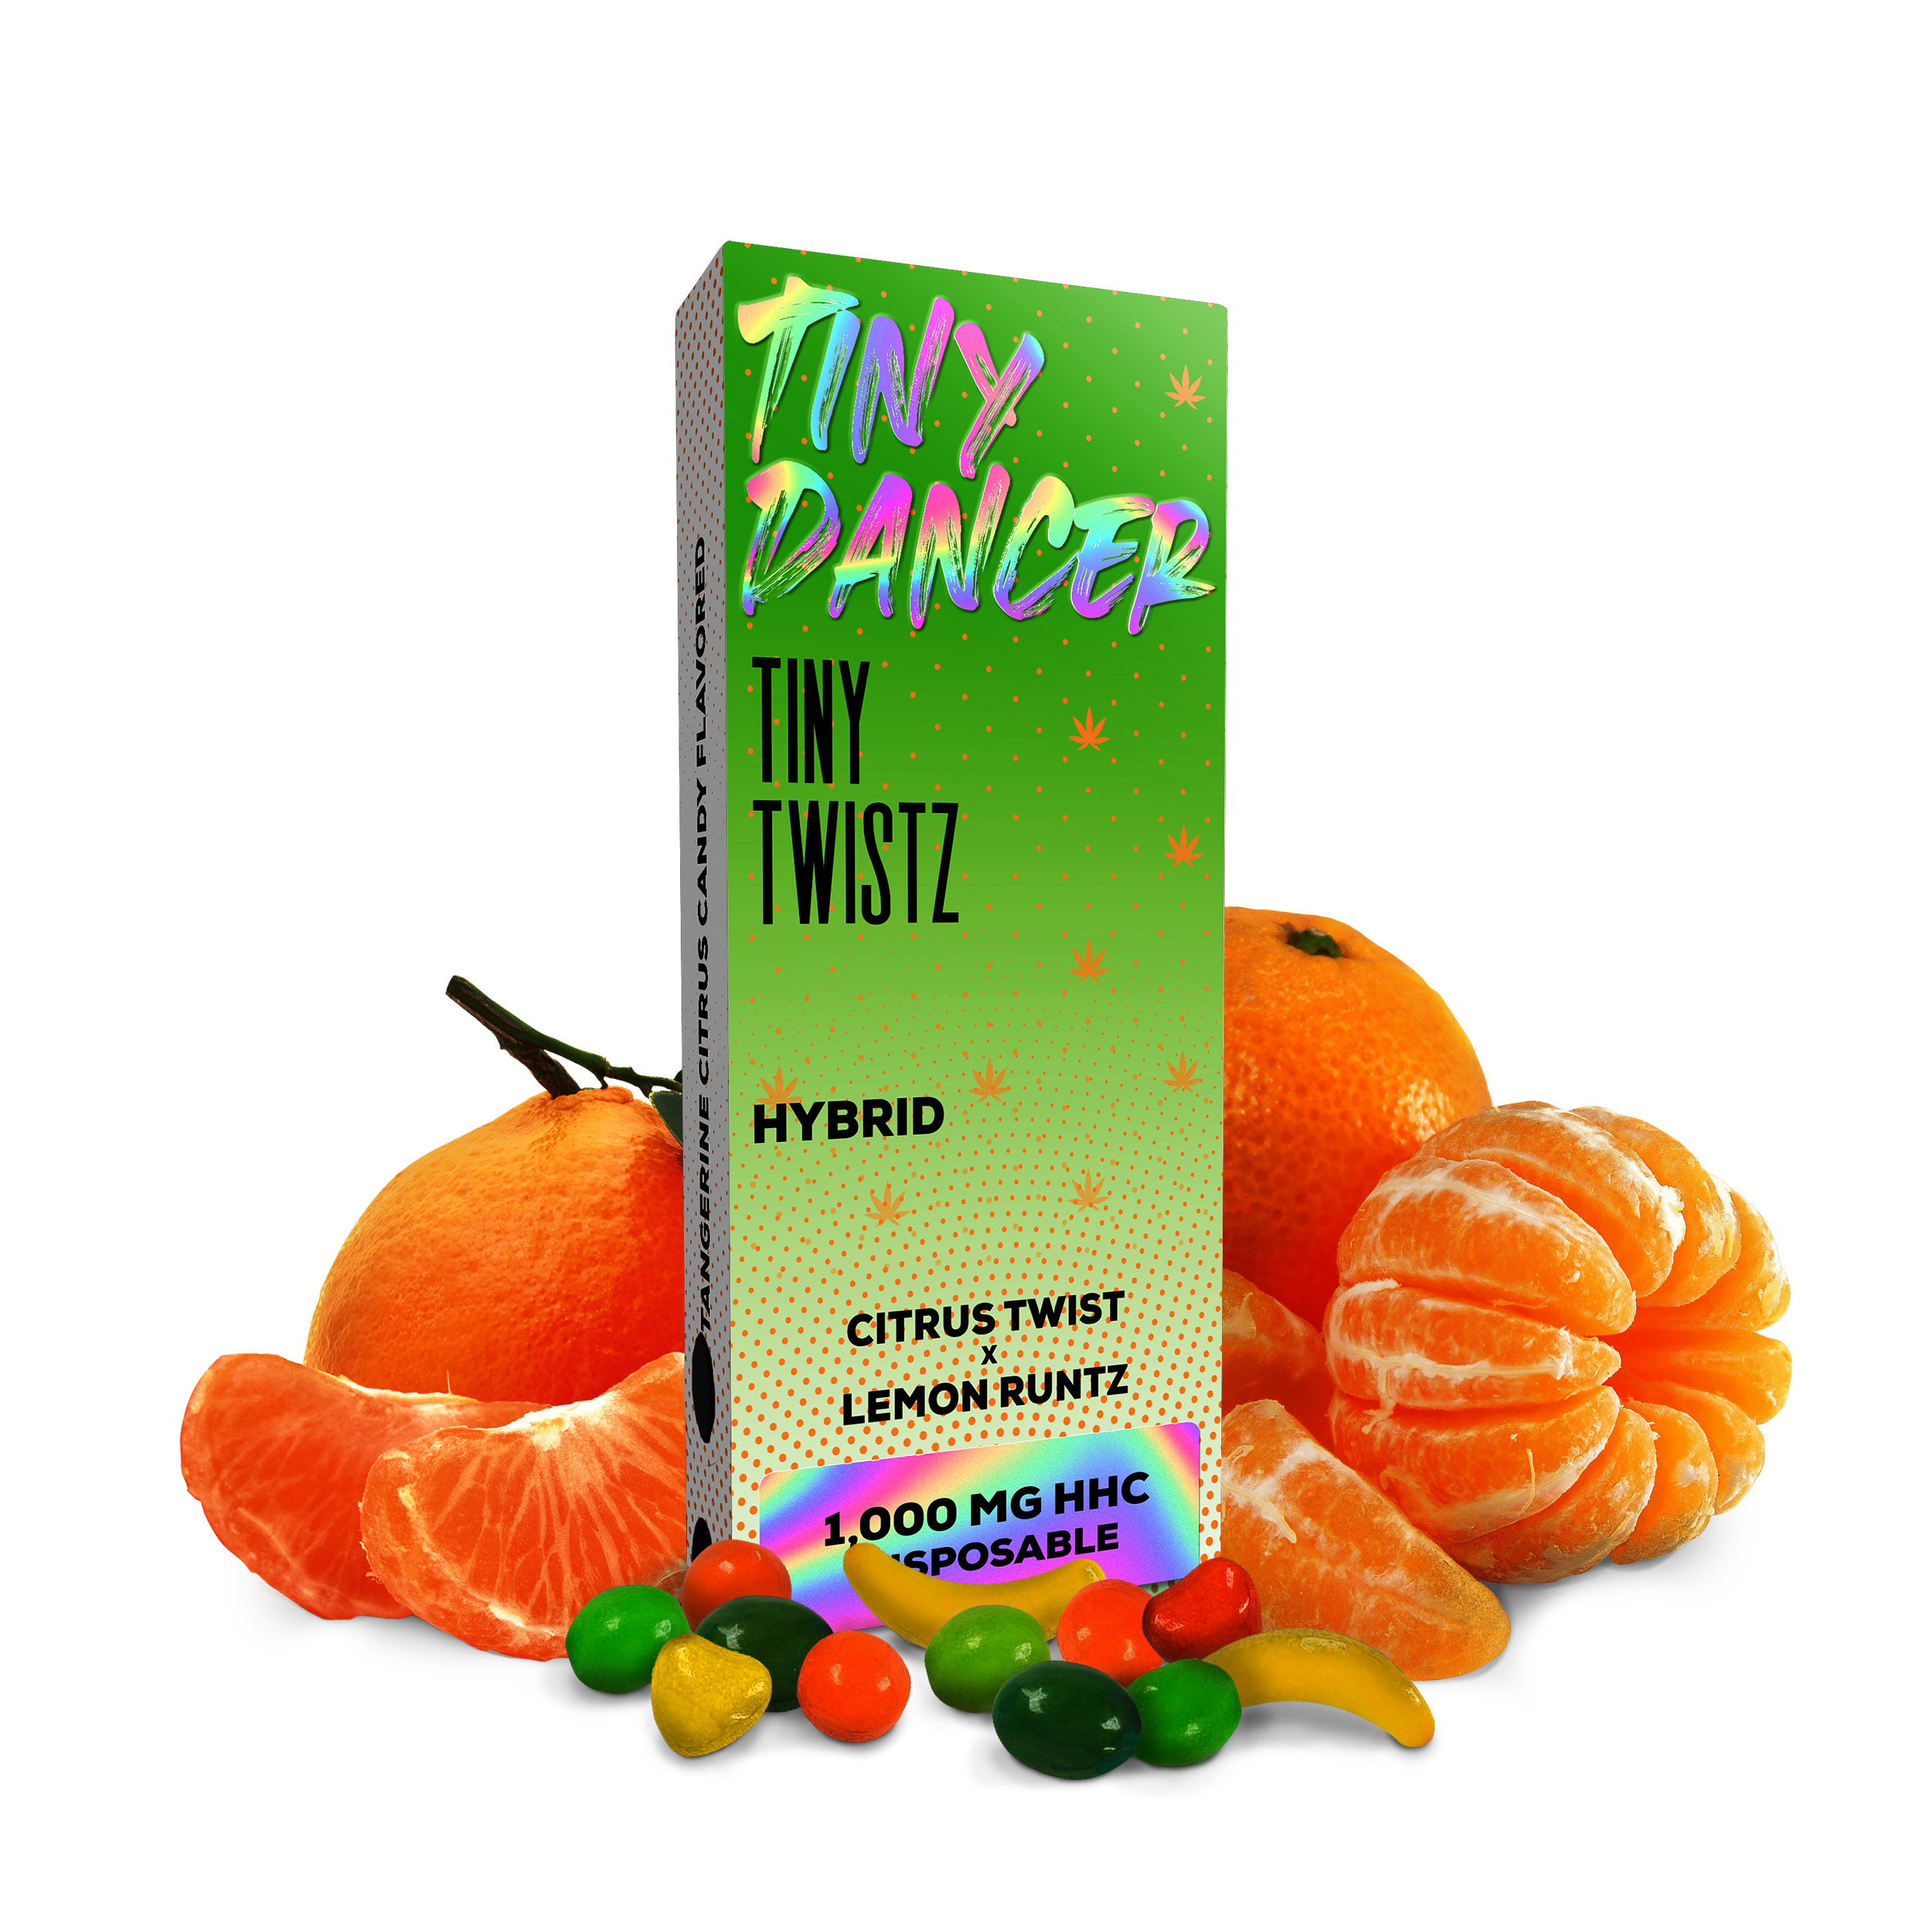 Tiny Dancer HHC Disposable 1G Tiny Twistz (Hybrid) - GenAlt Industries